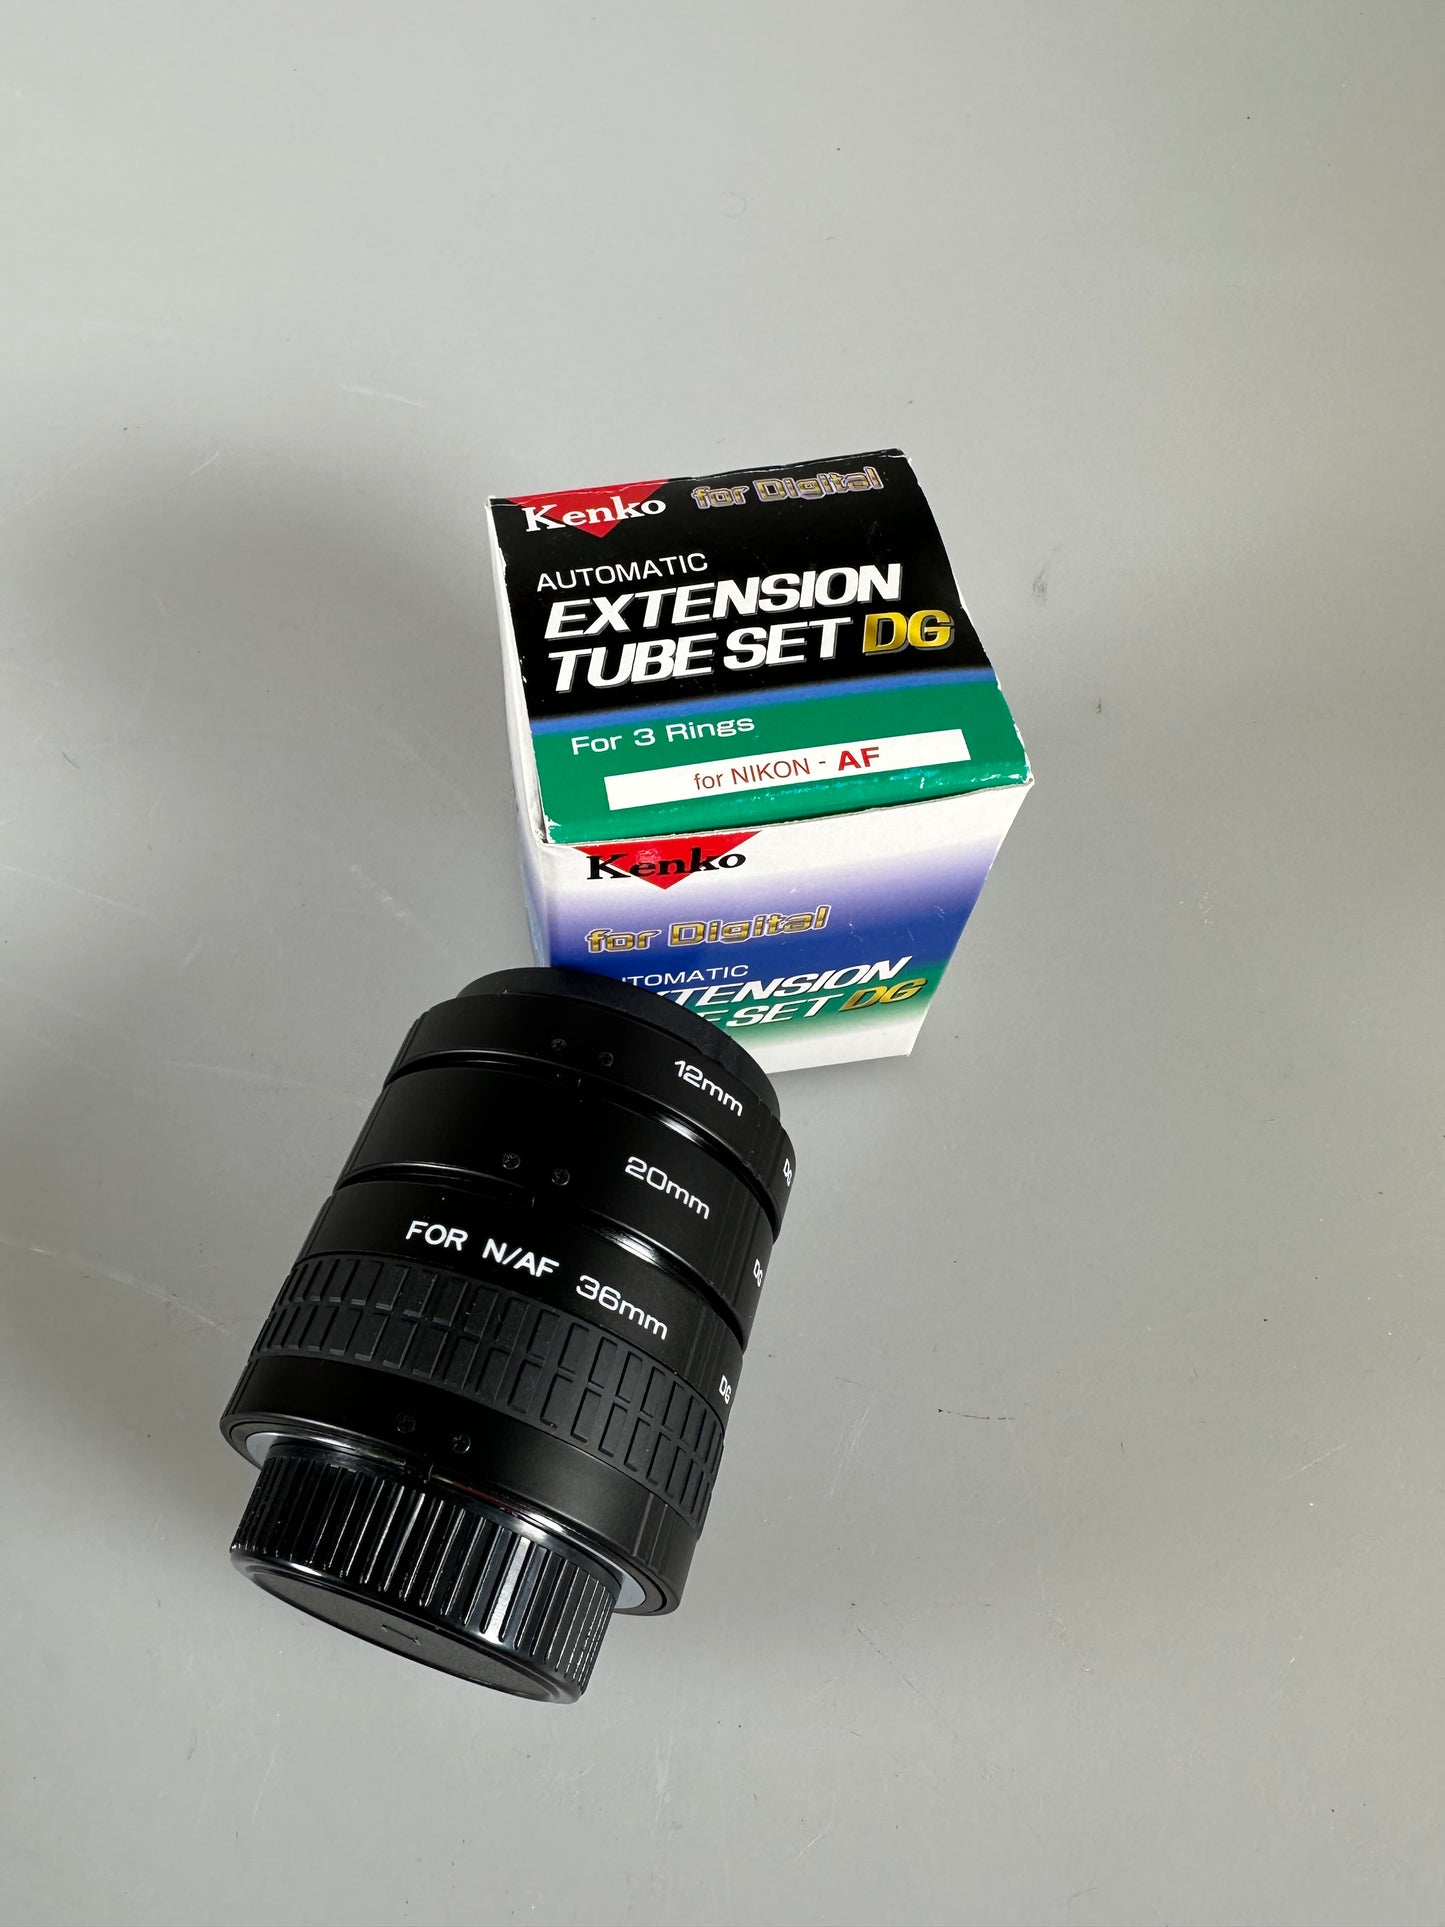 Kenko Extension Tube DG Set (12mm, 20mm, 36mm) for Nikon